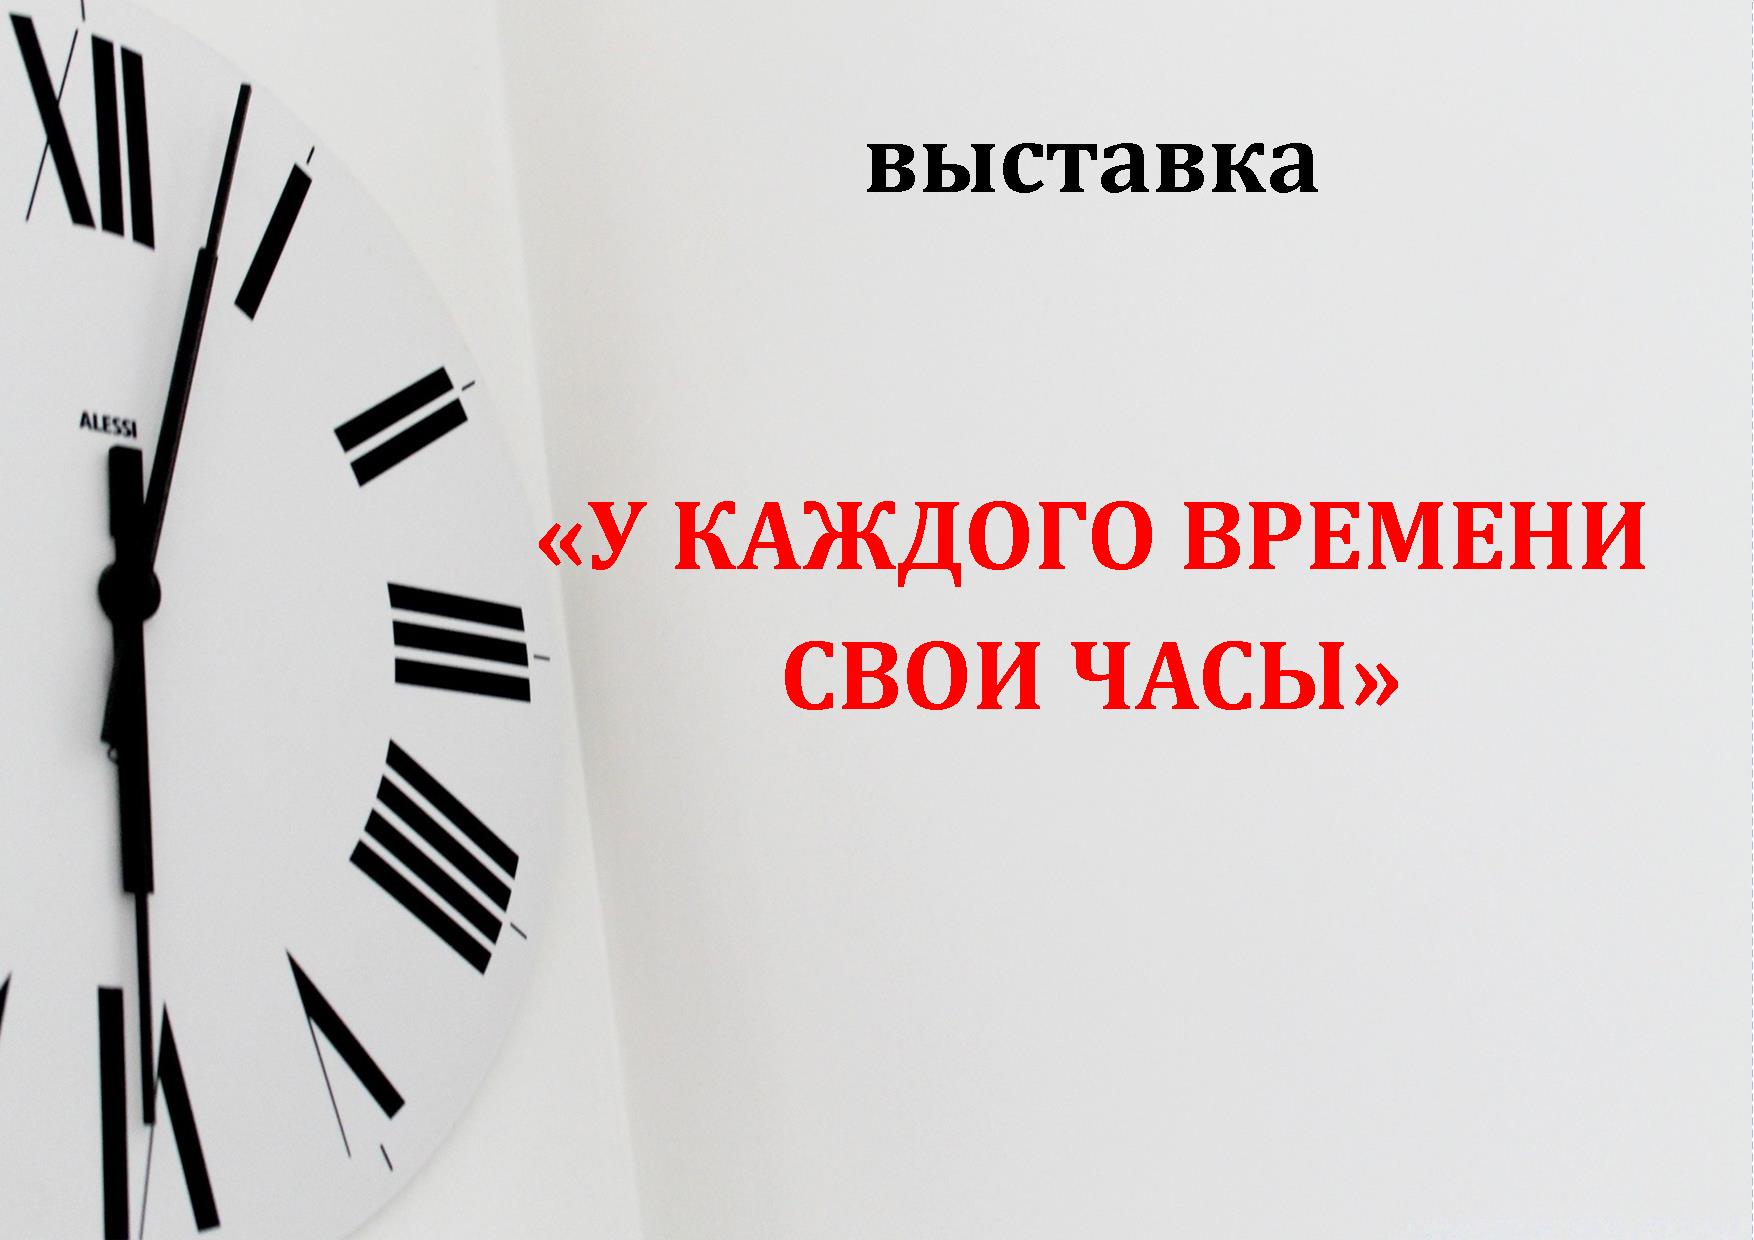 » У каждого времени свои часы»